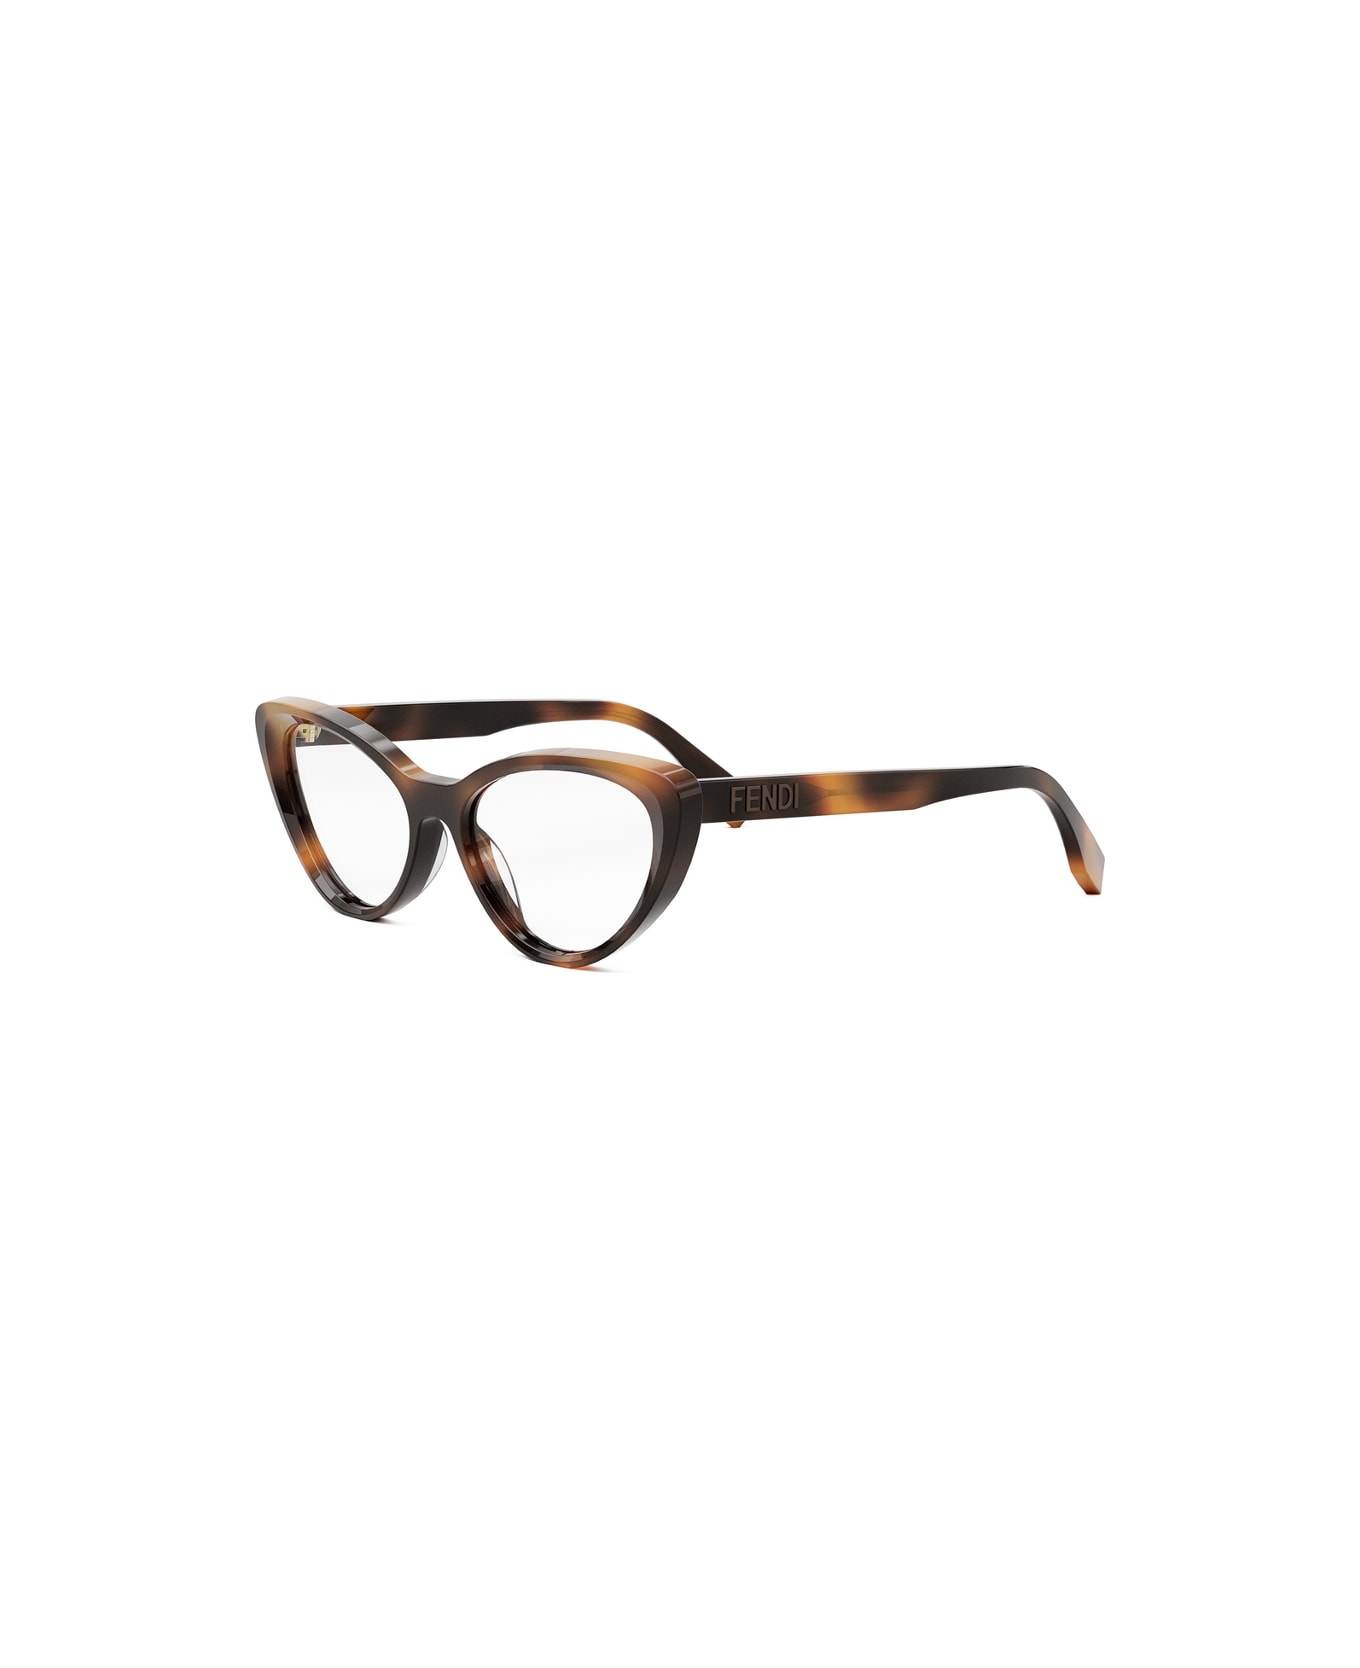 Fendi Eyewear FE50075i 053 Glasses - Tartarugato